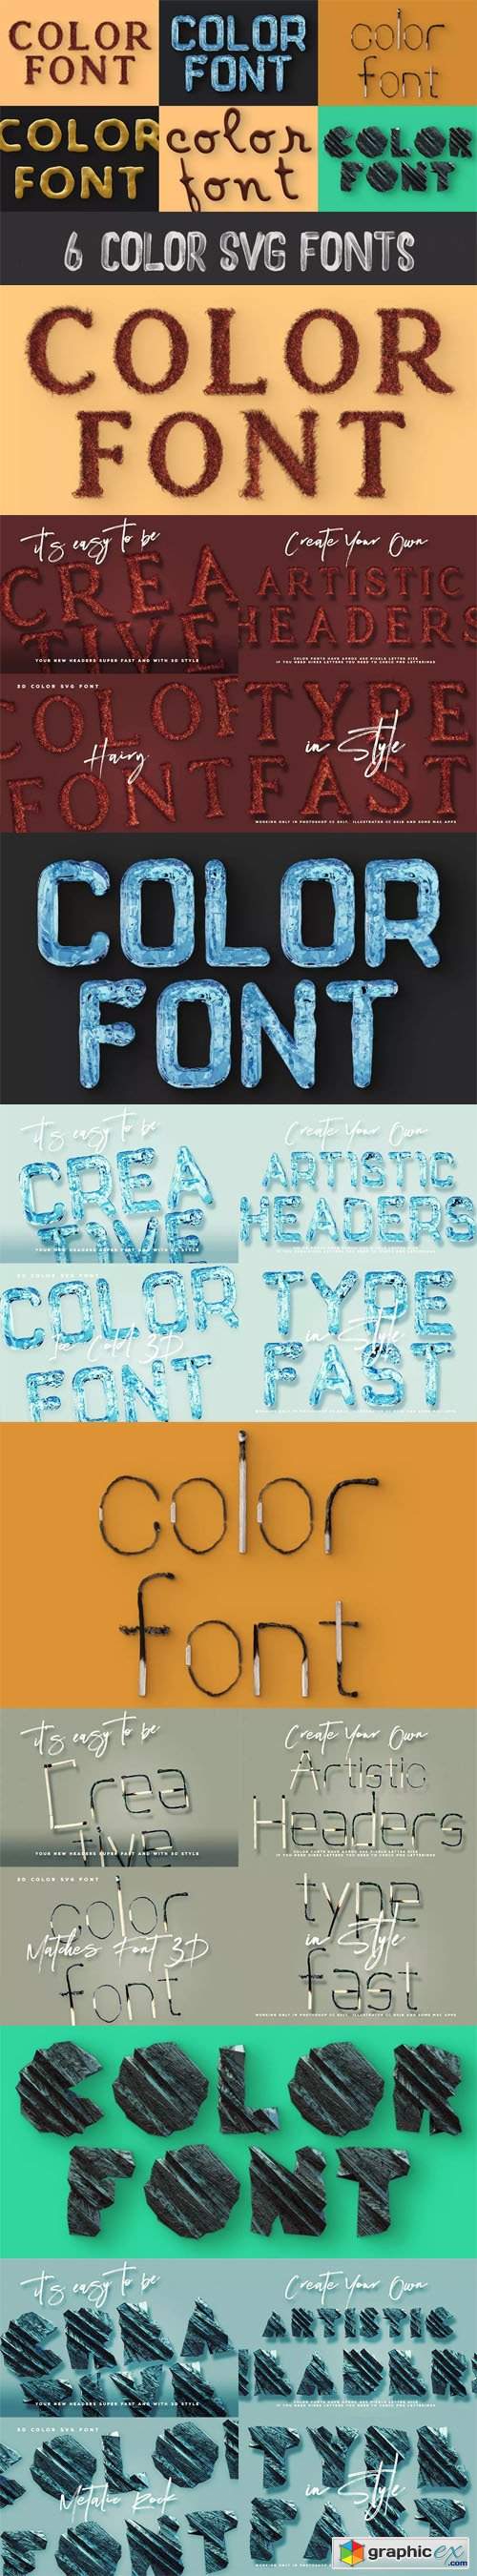  6 Color SVG Fonts 